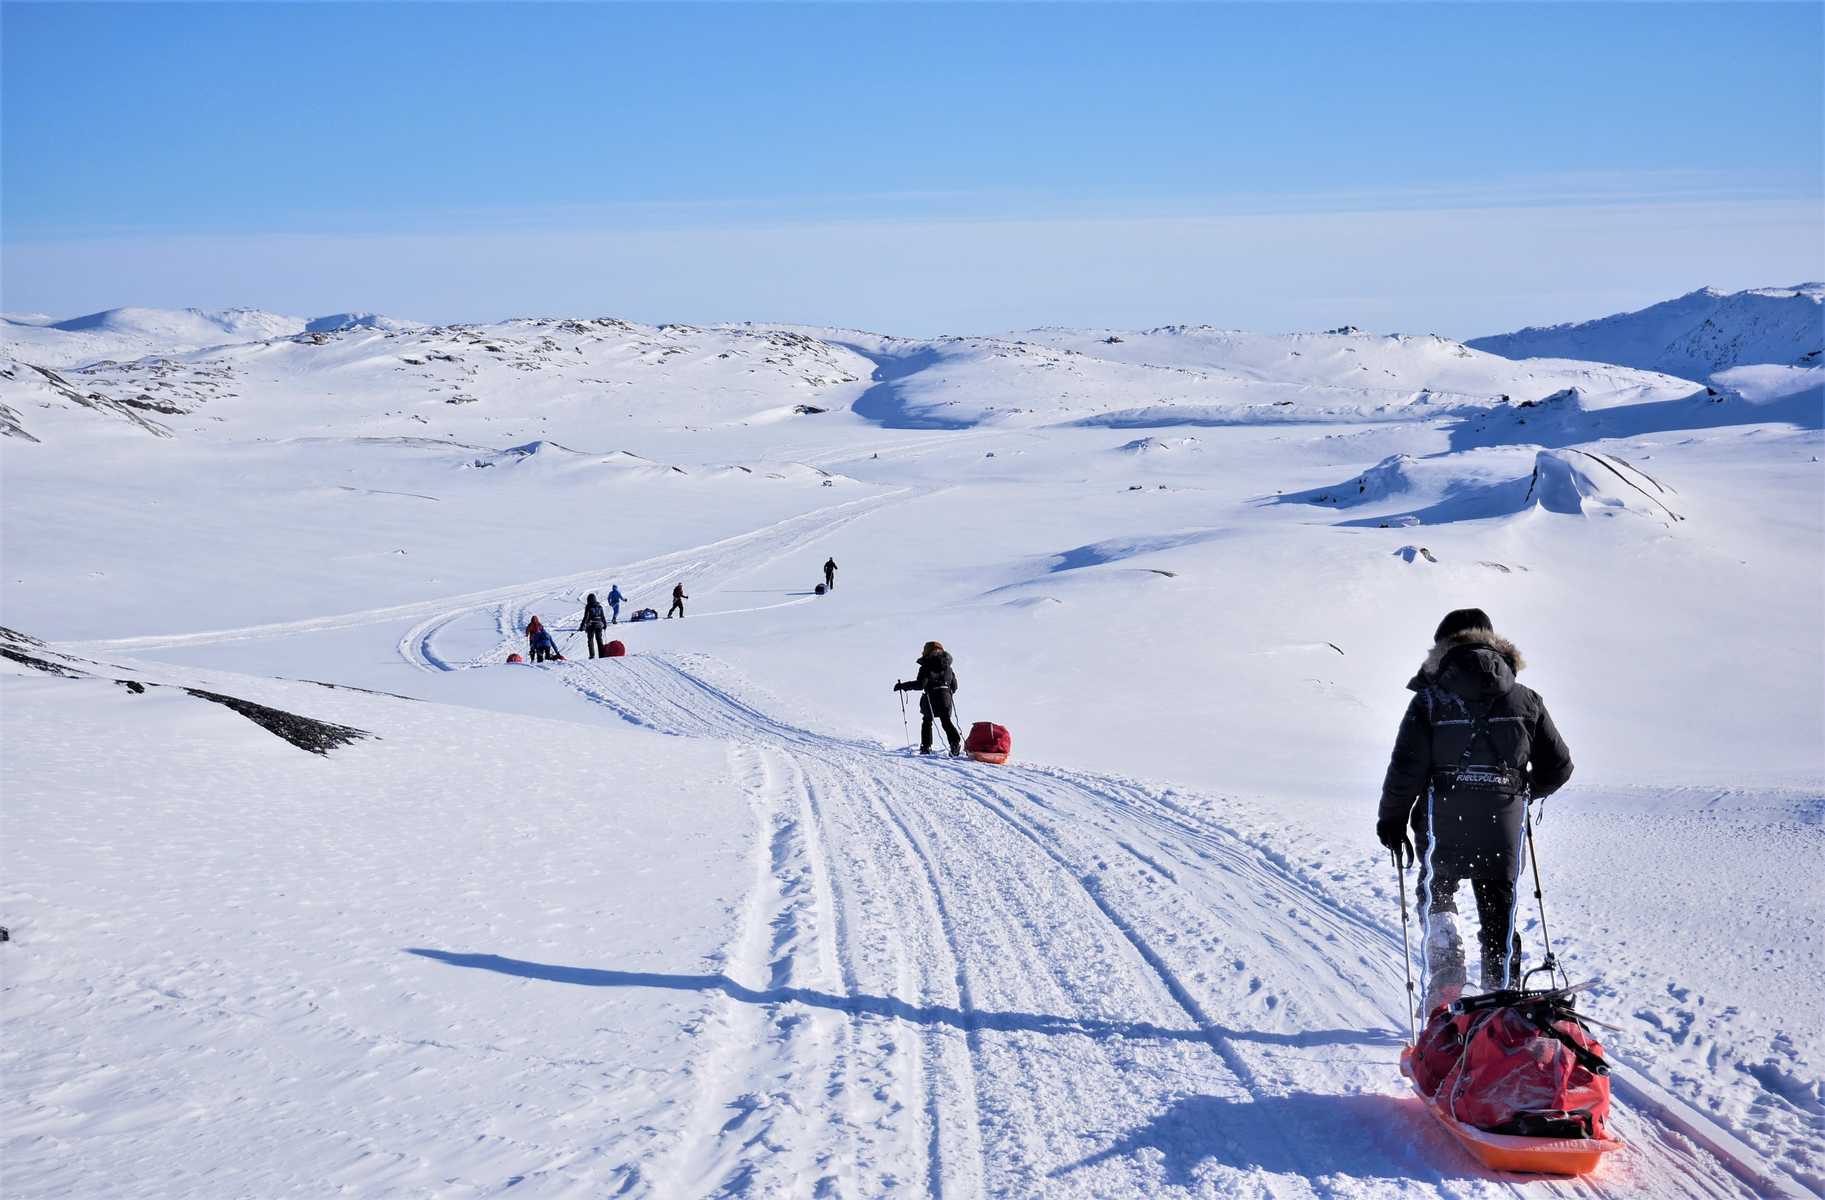 Expédition hivernale en Arctique en itinérance et autonomie